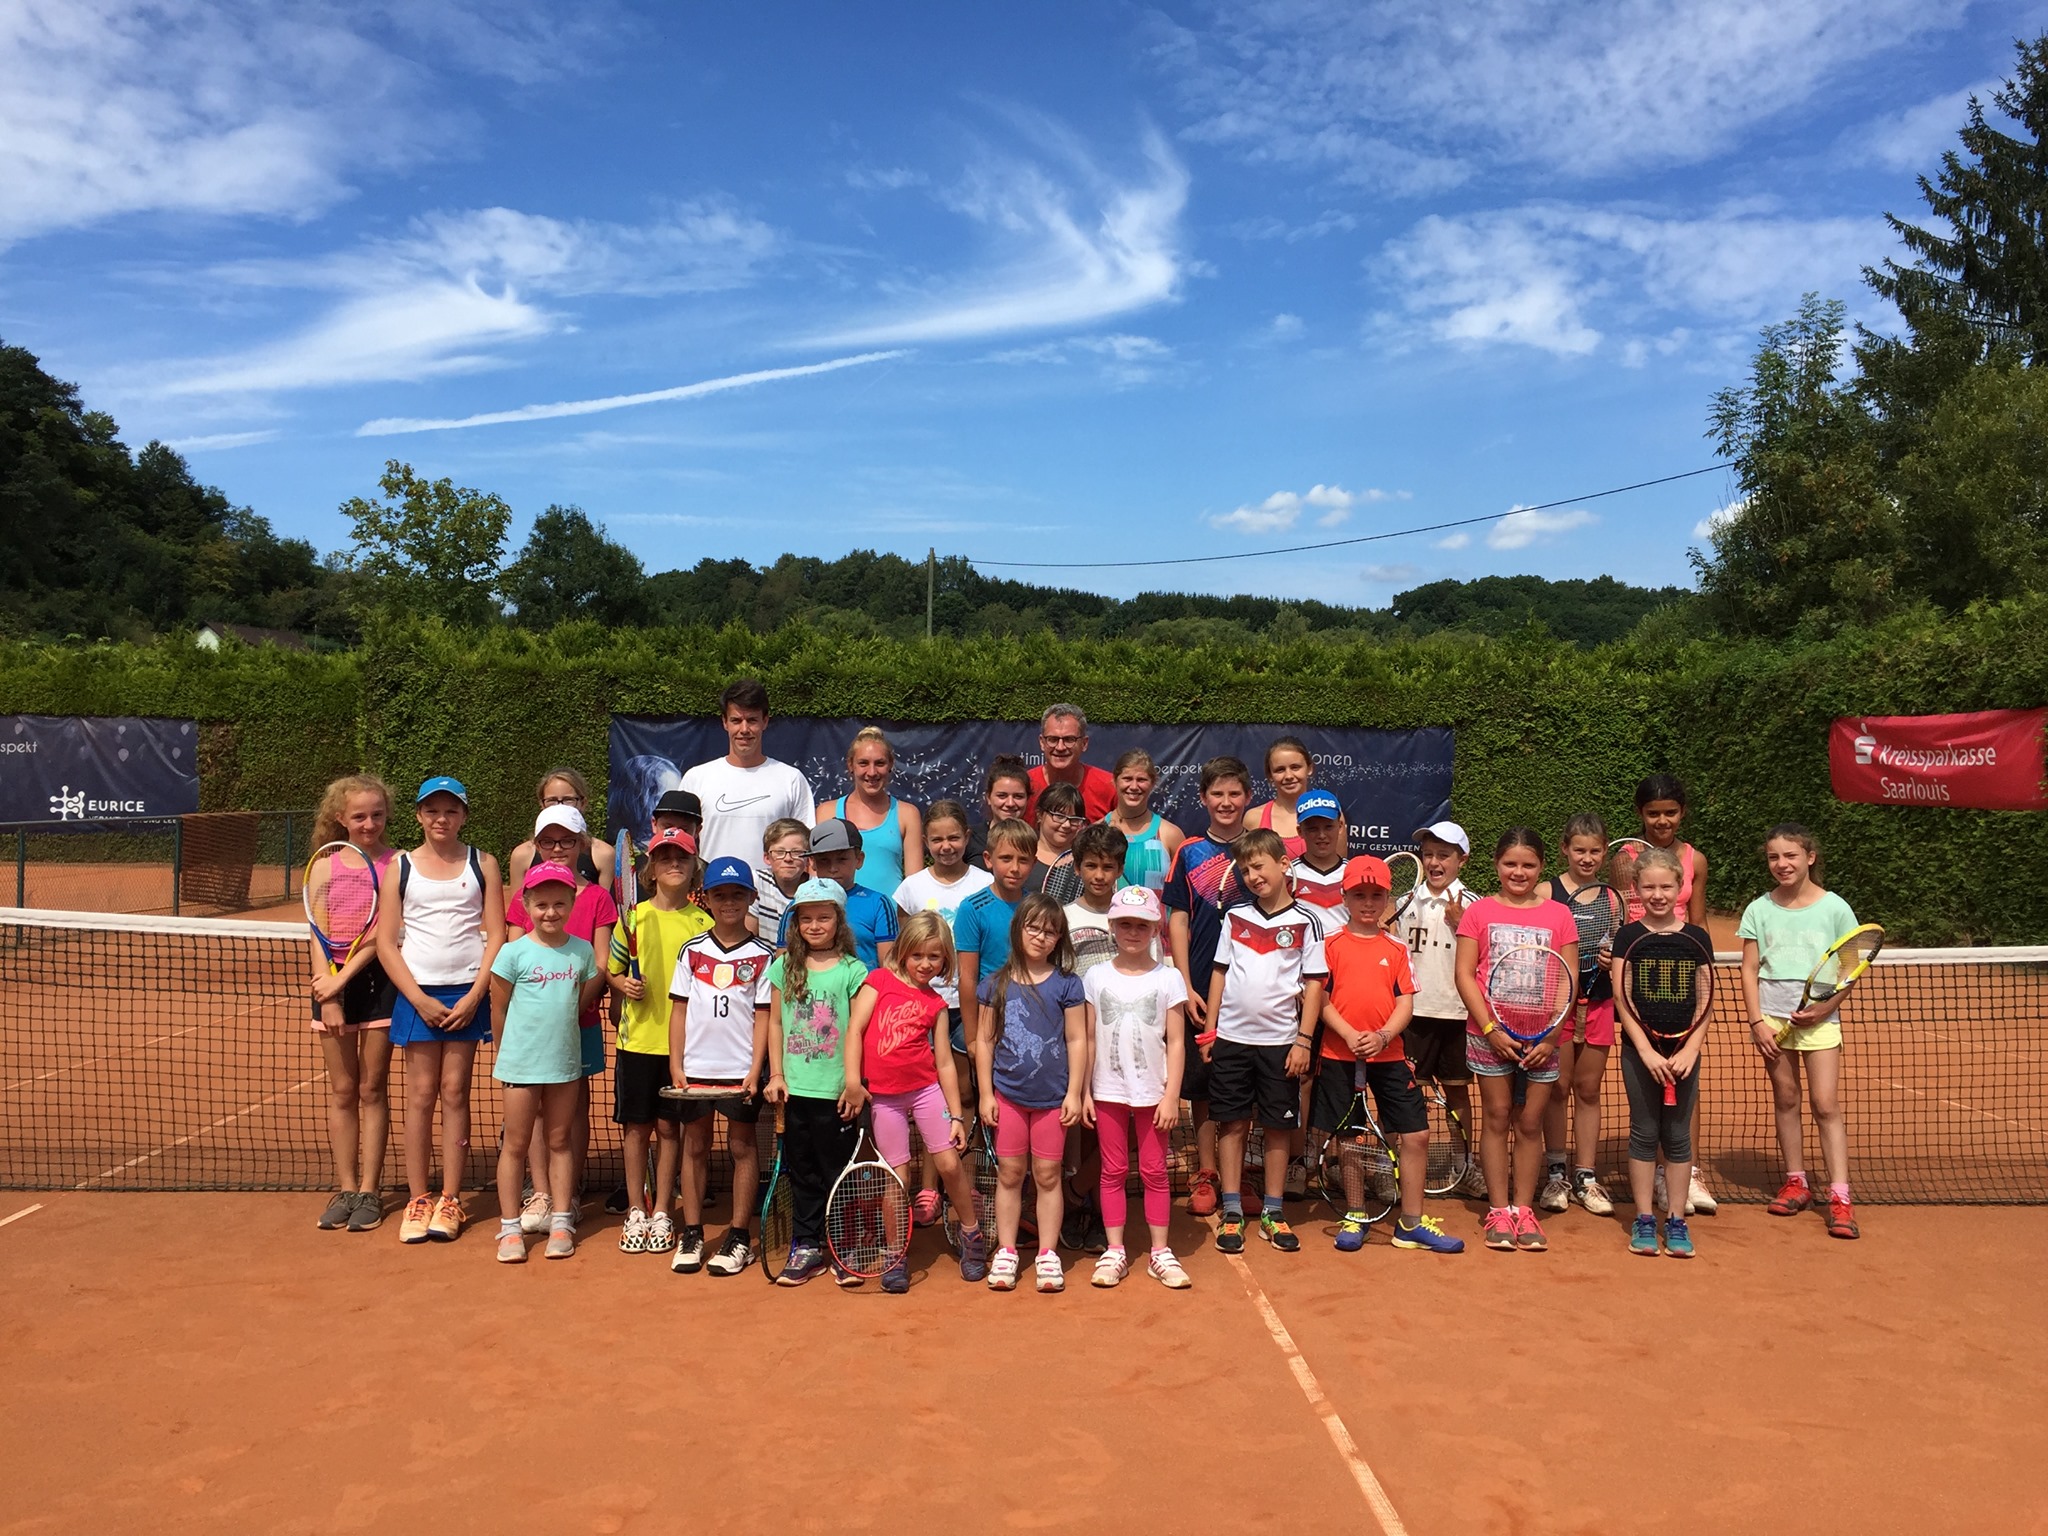 Ein Bild vom Tenniscamp 2020 mit allen Trainern und Kinder, die teilgenommen haben.